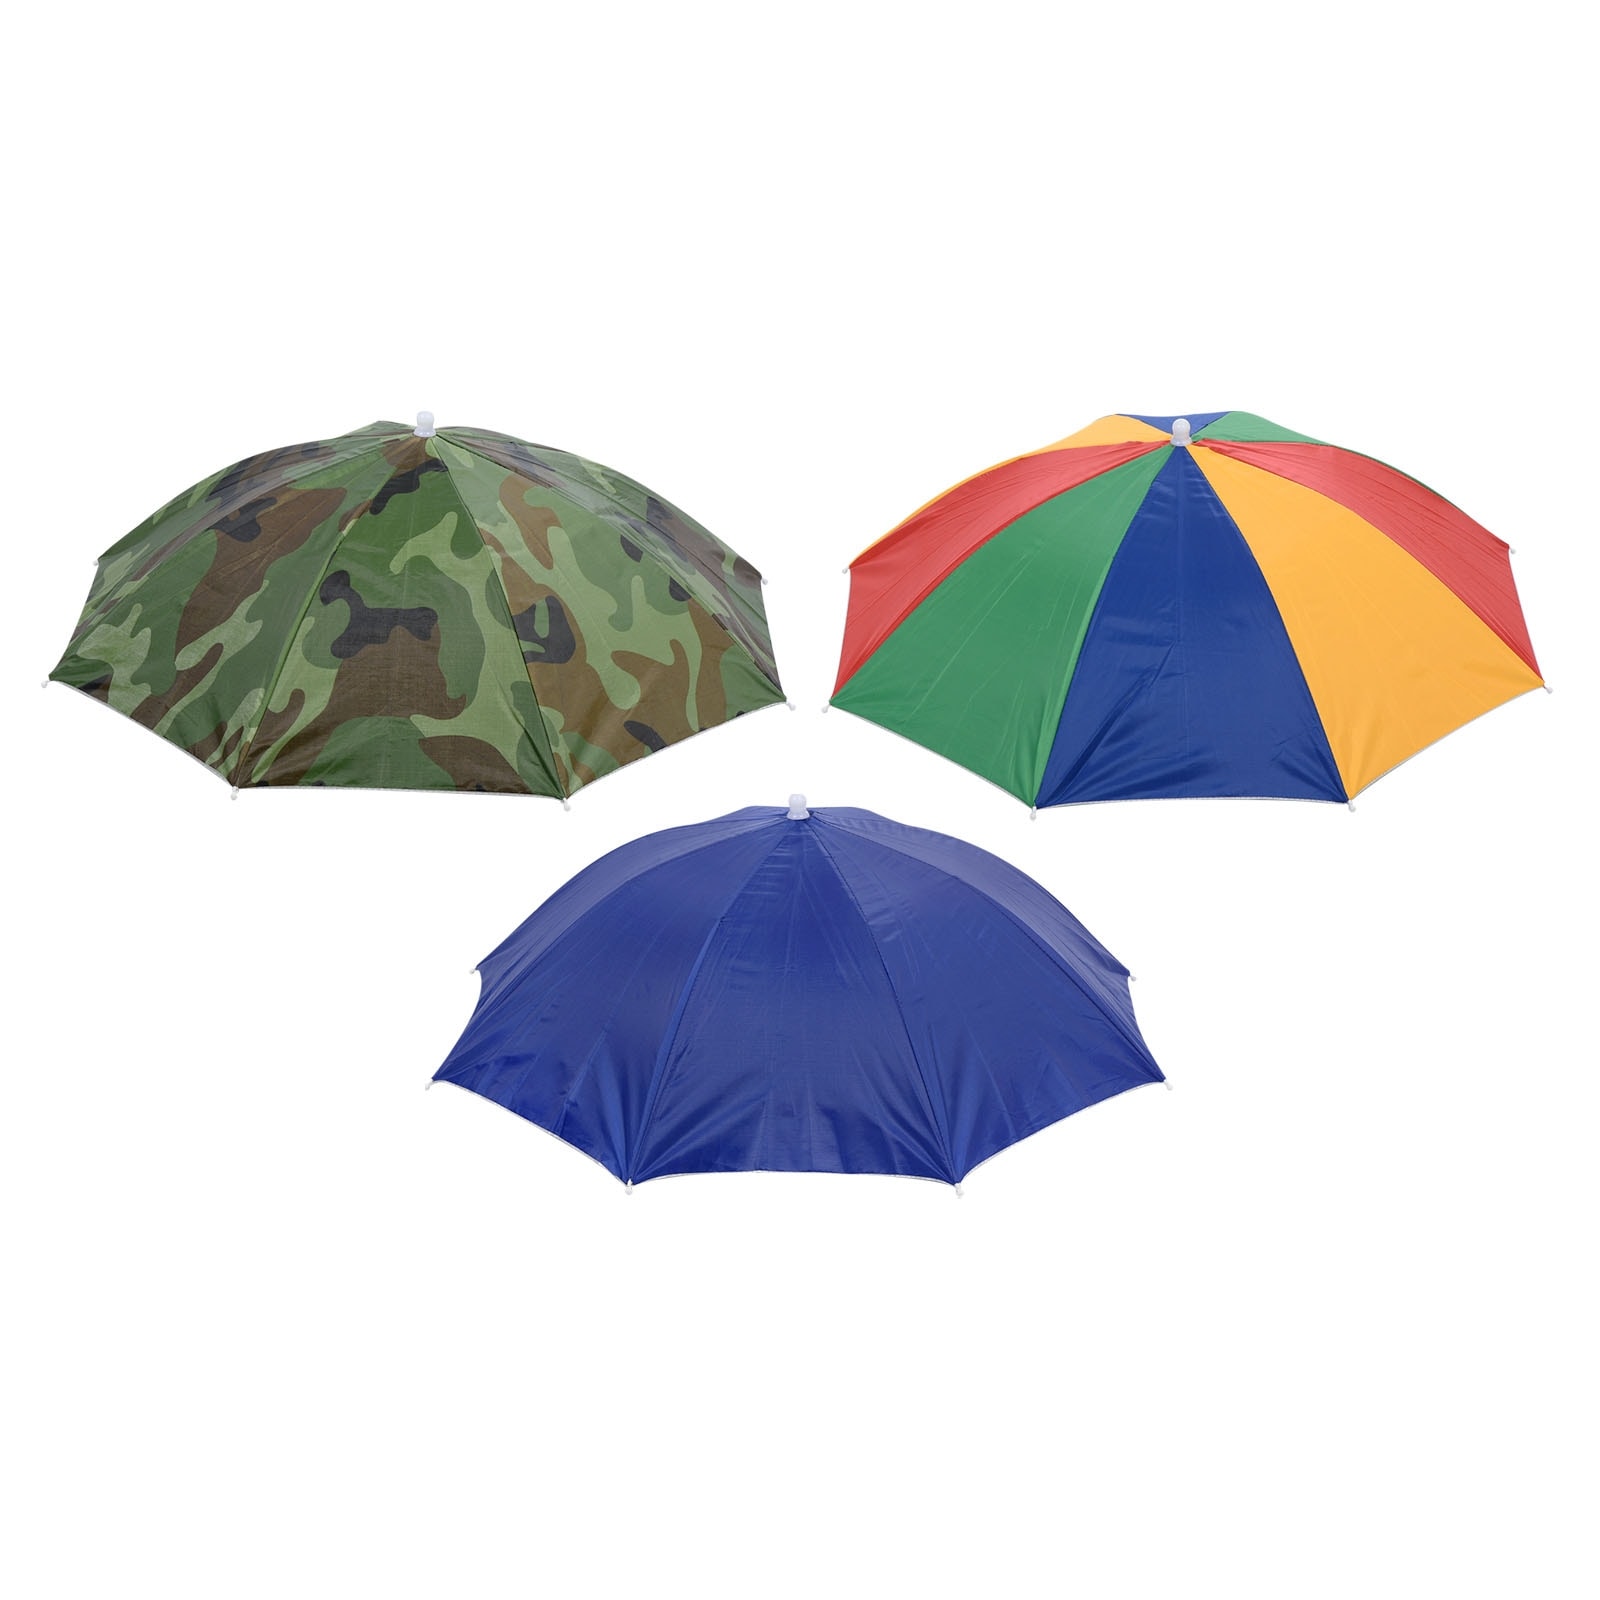 2Pcs 20 Fishing Umbrella Hat Folded Sun Rain Cap Head Umbrella